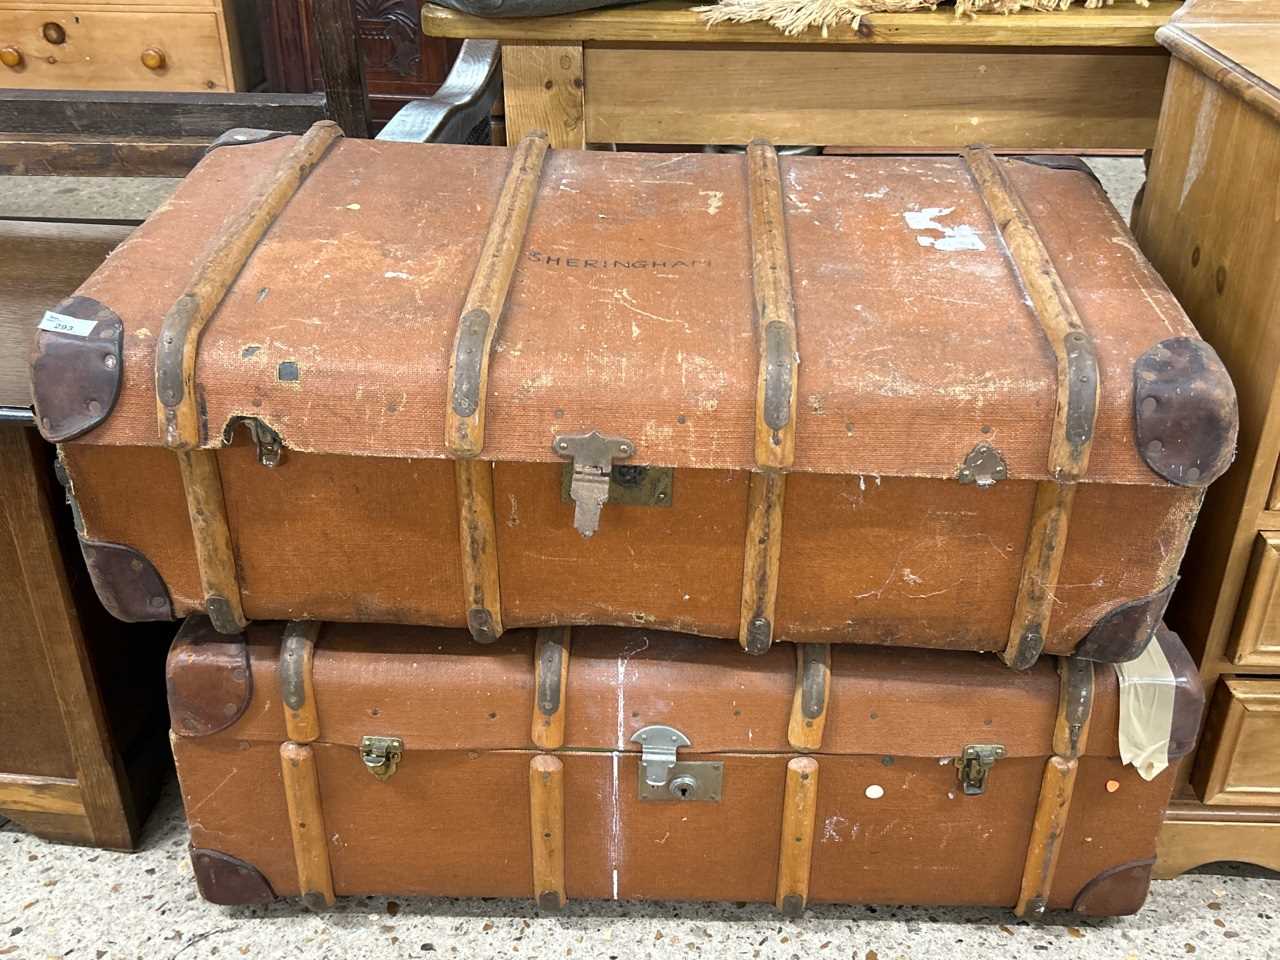 Two vintage wooden framed travel cases